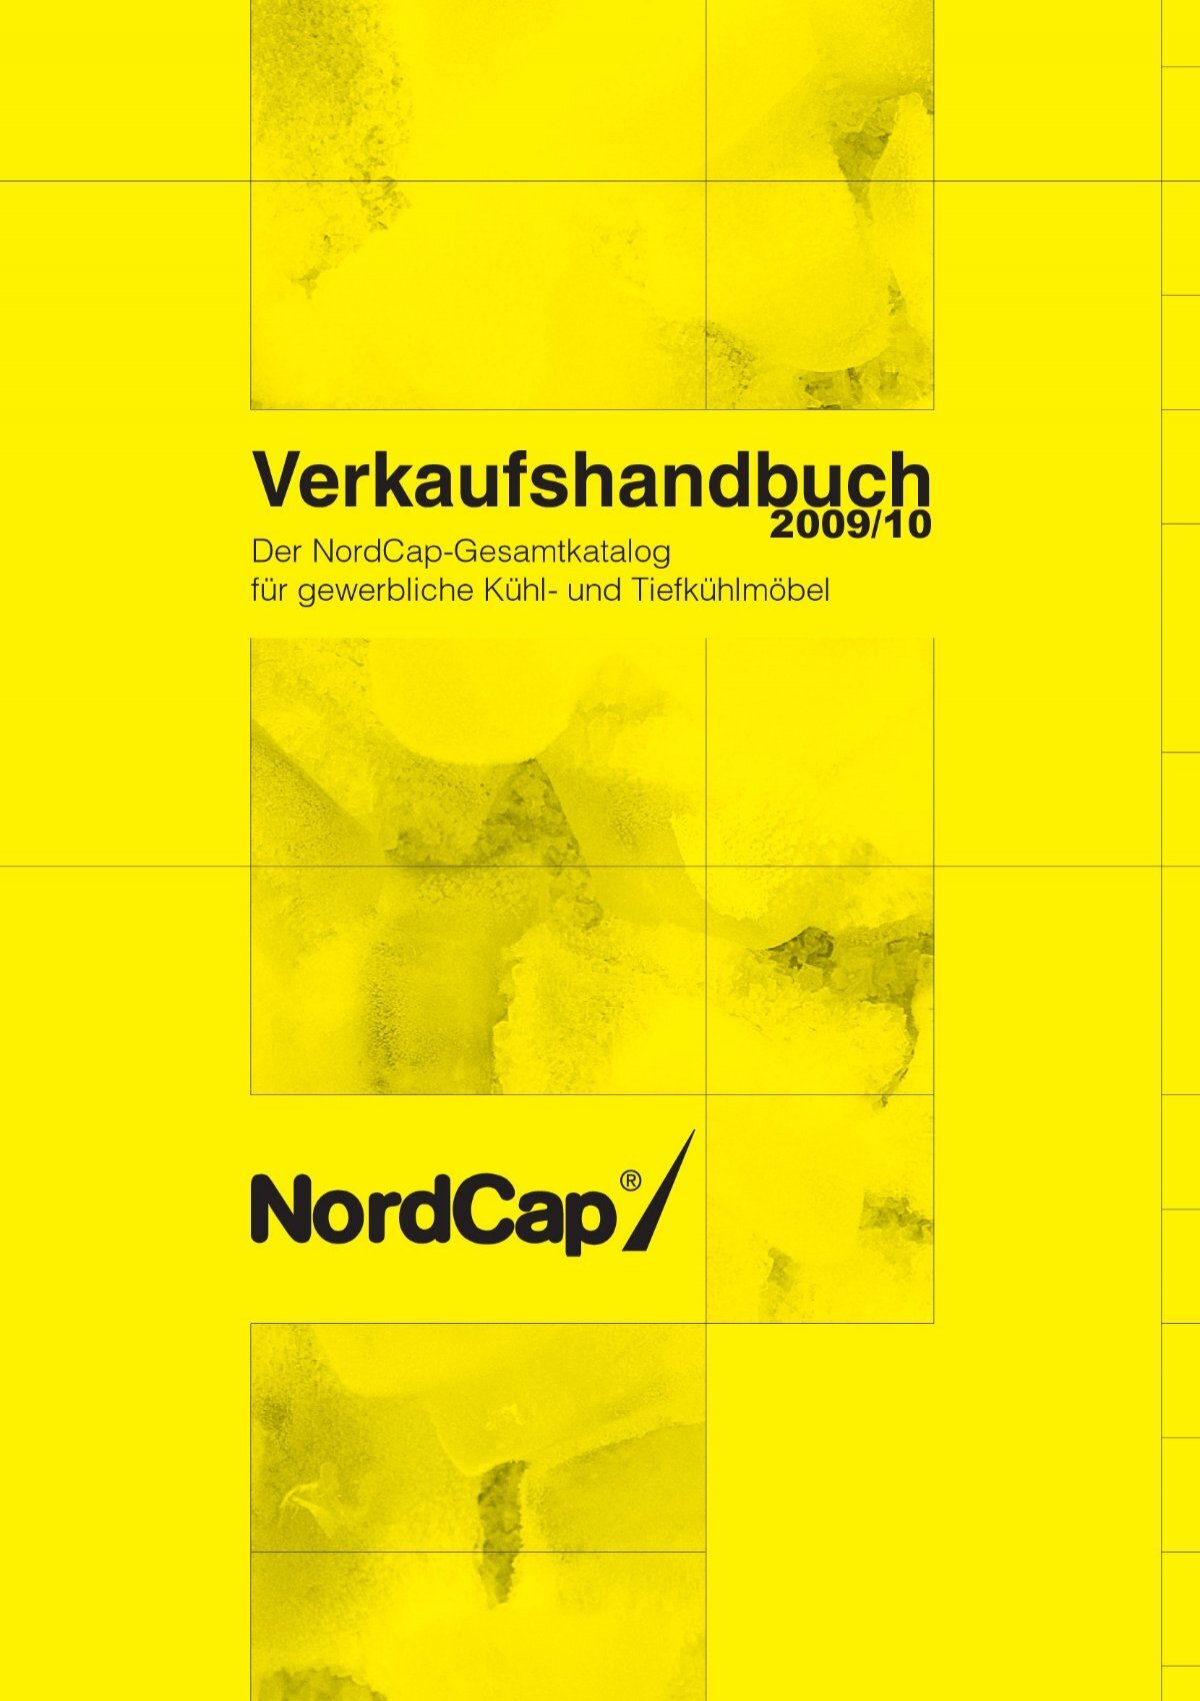 NordCap Verkaufshandbuch 2009/10 - der Gesamtkatalog für